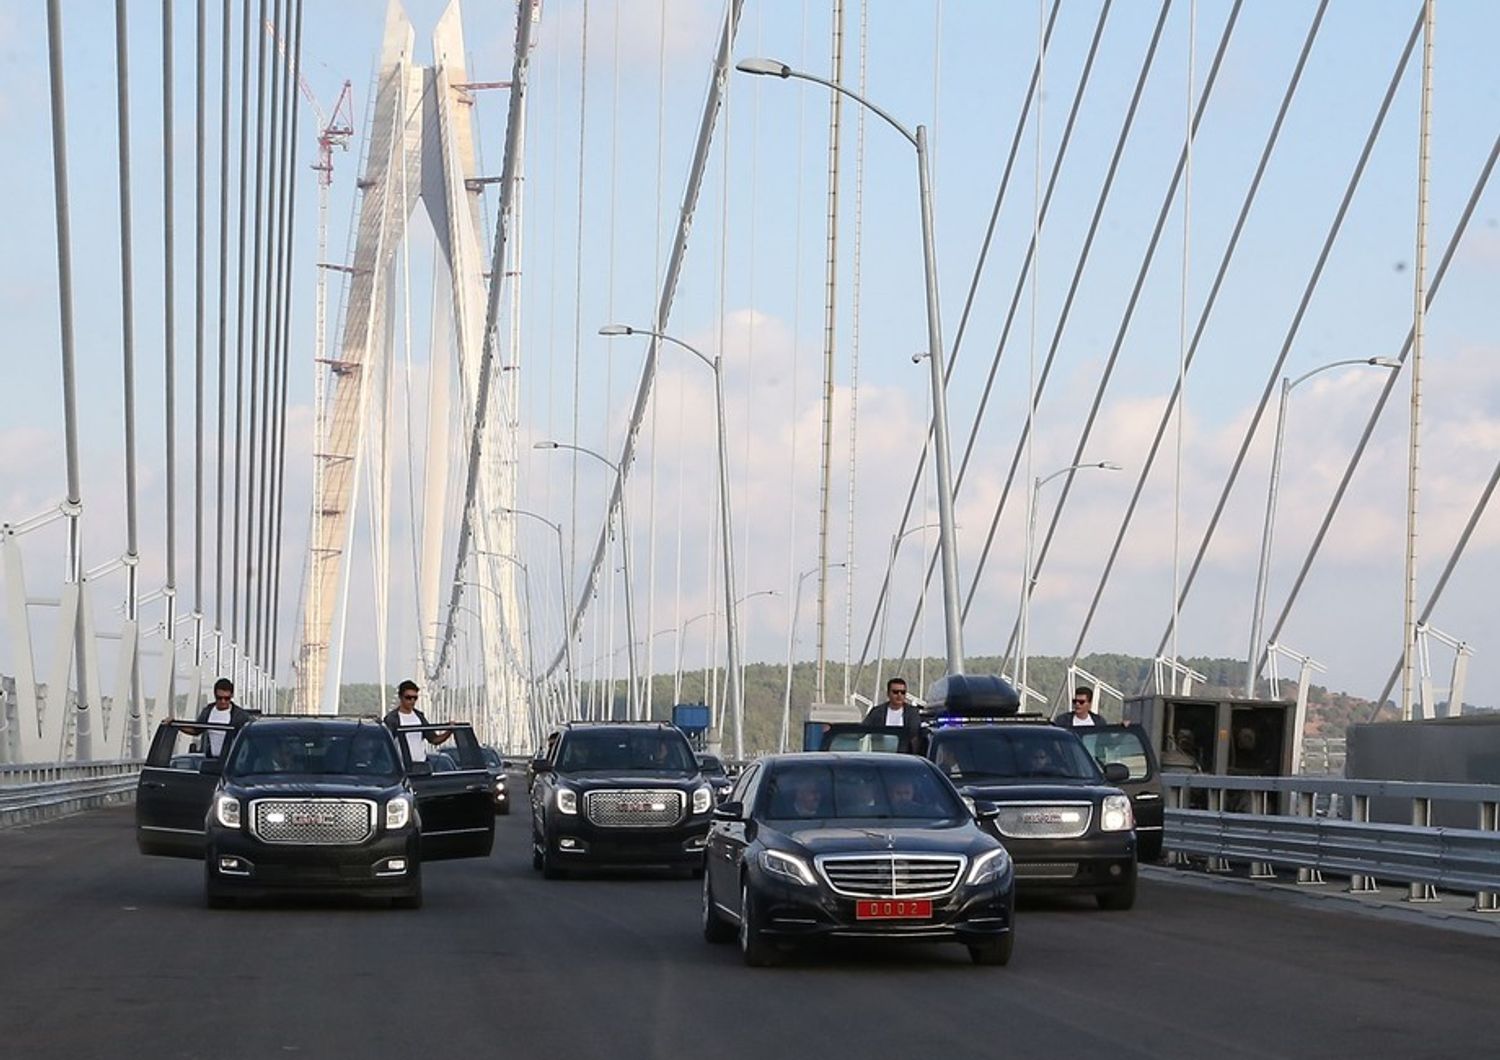 Yavuz Sultan Selim Turchia, Istanbul, ponte sospeso piu' largo del mondo&nbsp;